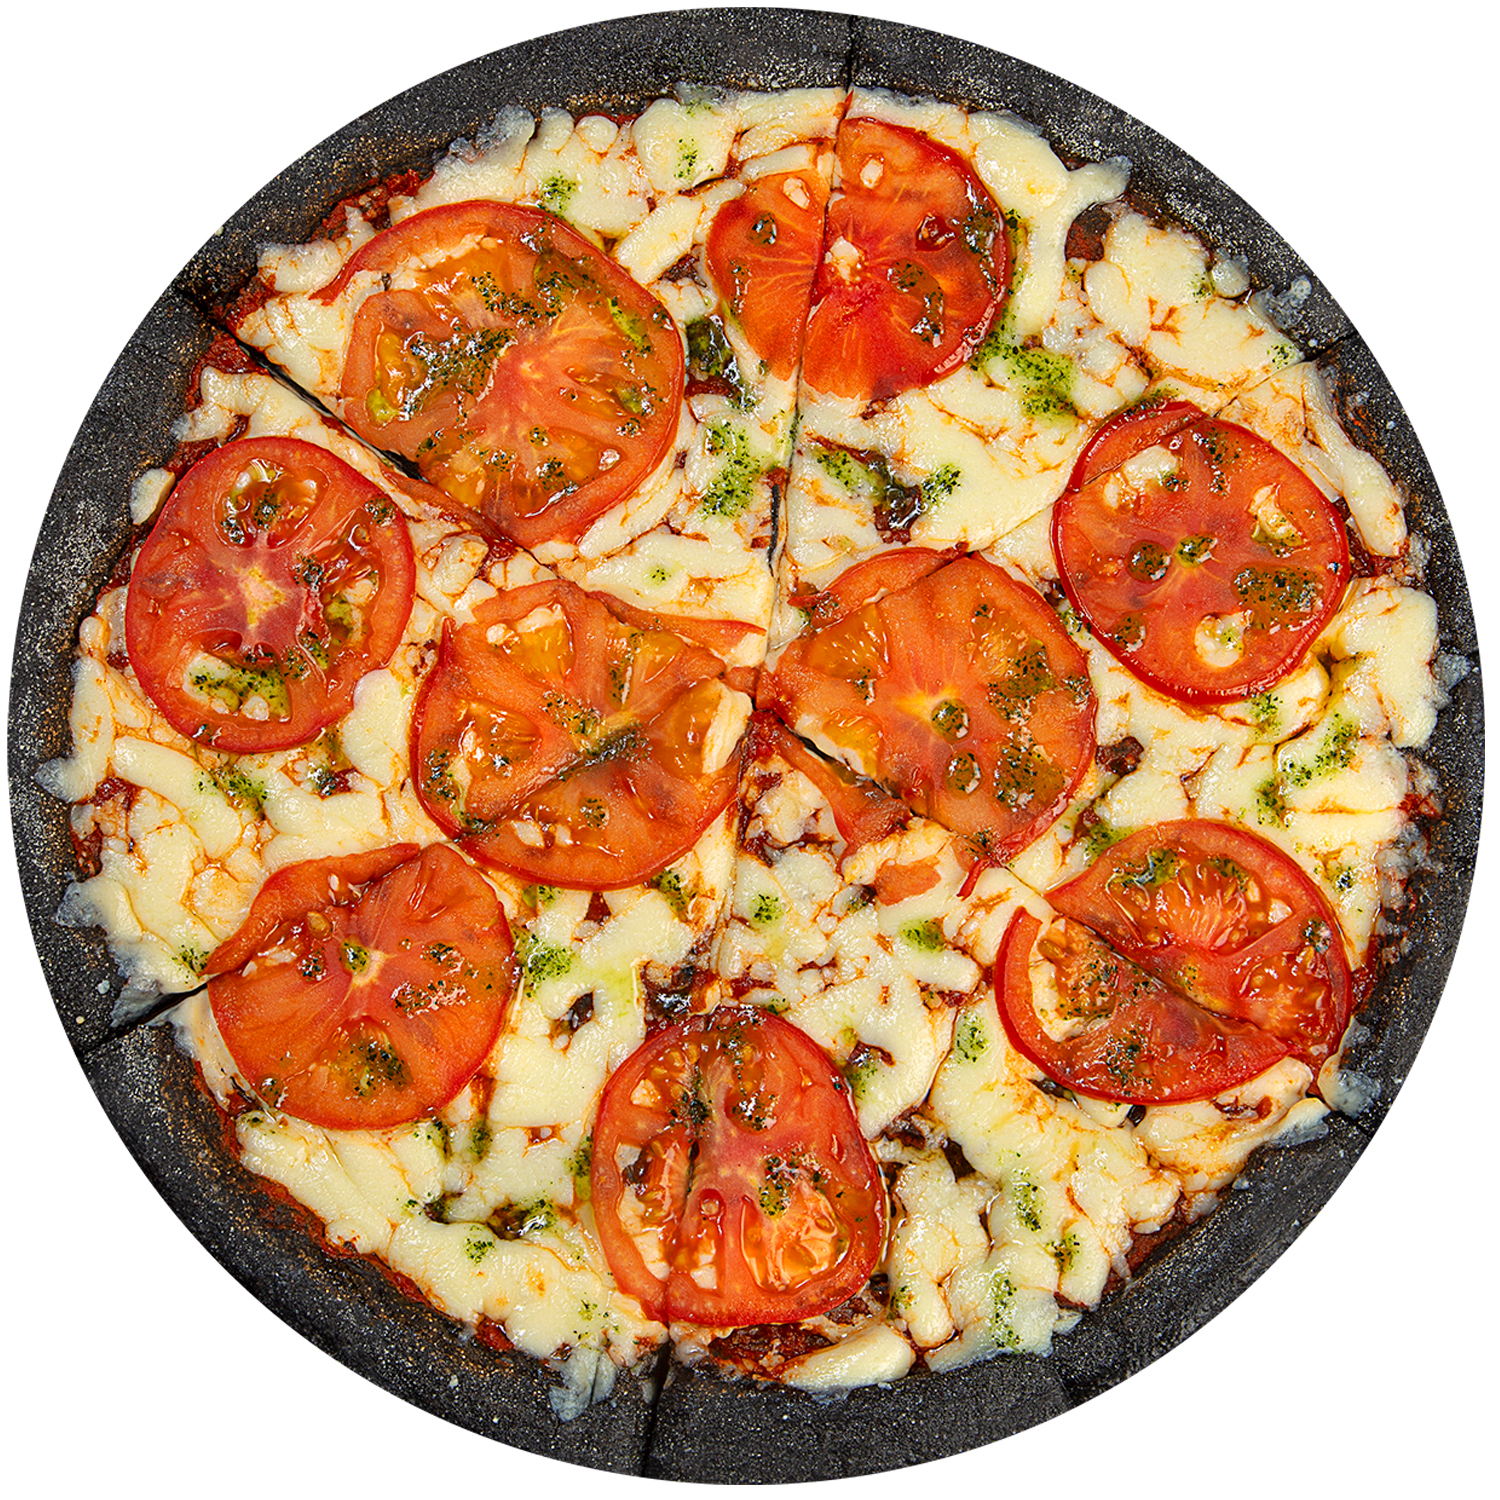 томатный соус моцарелла орегано анчоусы пицца фото 95